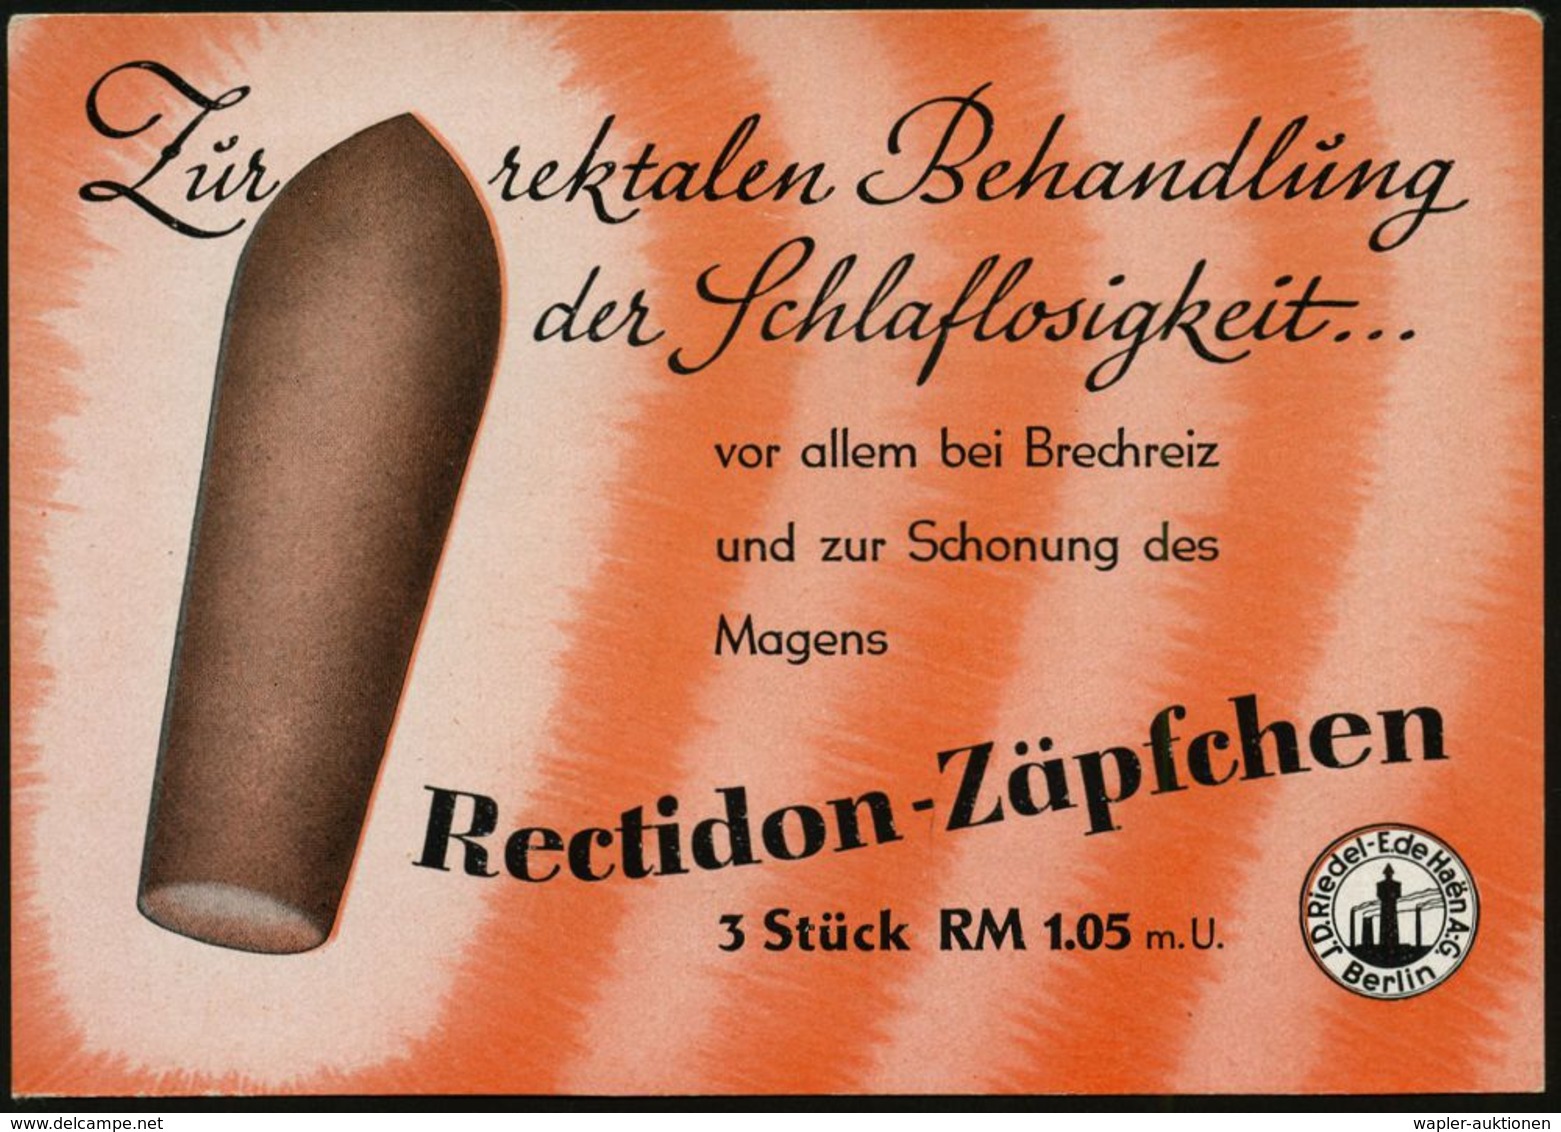 BERLIN-BRITZ 1/ Ceadon/ Ein Natürliches/ Stuhlregelungsmittel.. 1942 (28.9.) AFS Auf Reklame-Ak.: Recidon-Zäpfchen.. (Re - Geneeskunde